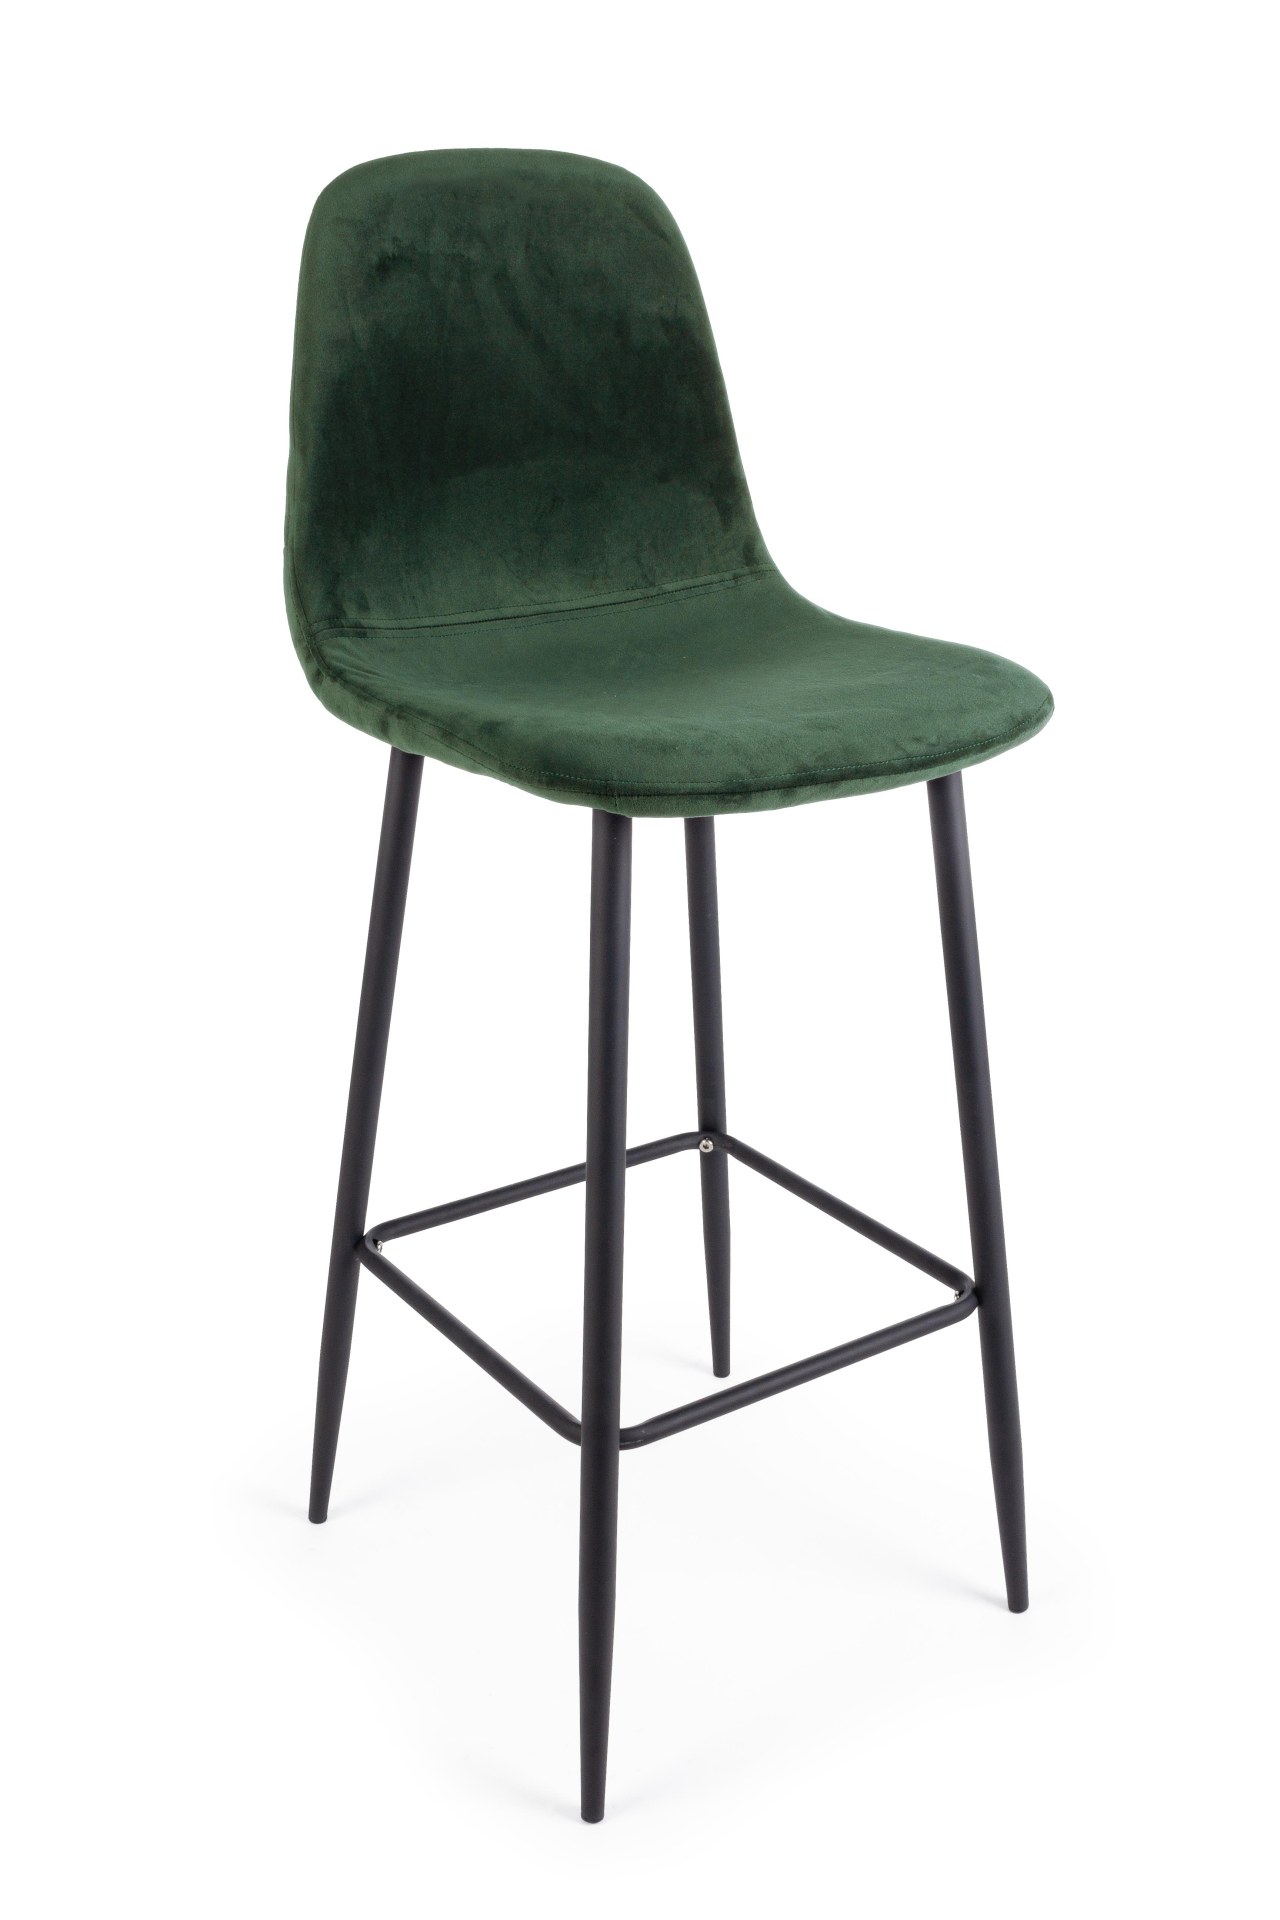 Der Barhocker Irelia überzeugt mit seinem moderndem Design. Gefertigt wurde er aus Samt, welches einen dunkelgrünen Farbton besitzt. Das Gestell ist aus Metall und hat eine schwarze Farbe. Die Sitzhöhe des Hockers beträgt 76 cm.